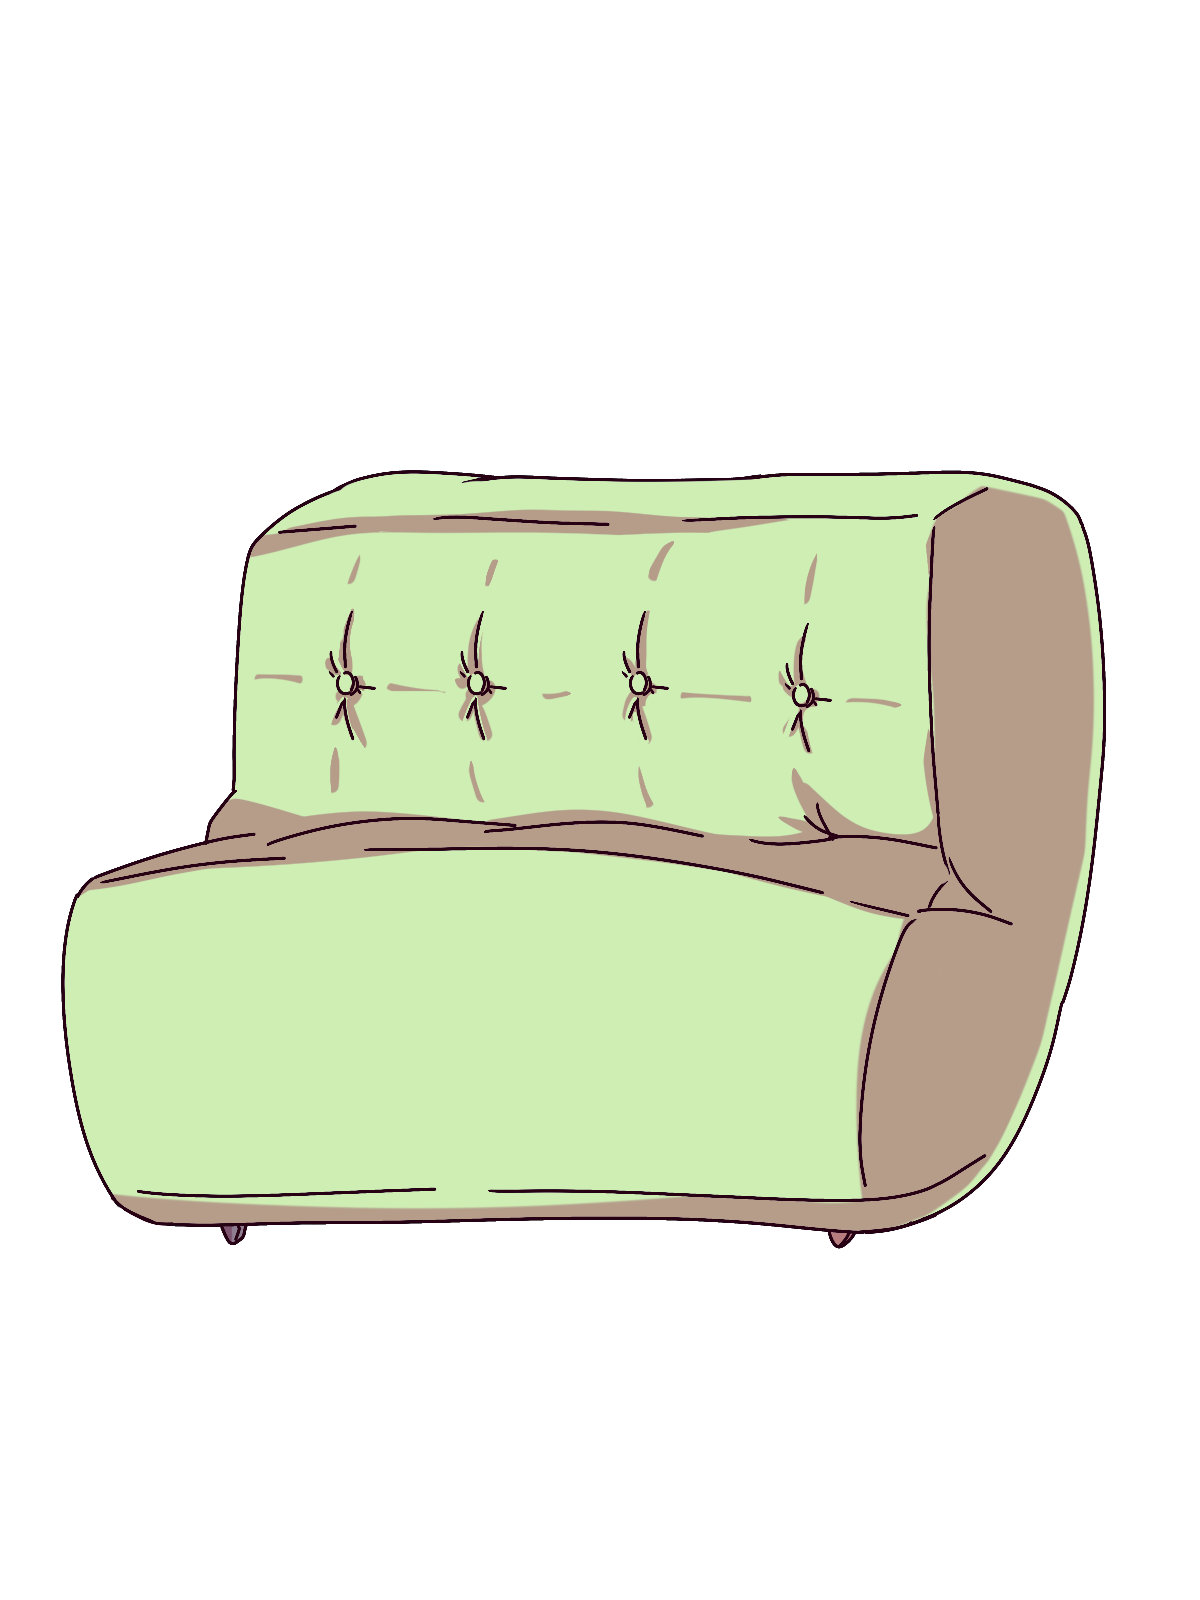 黄緑色のソファのイラスト